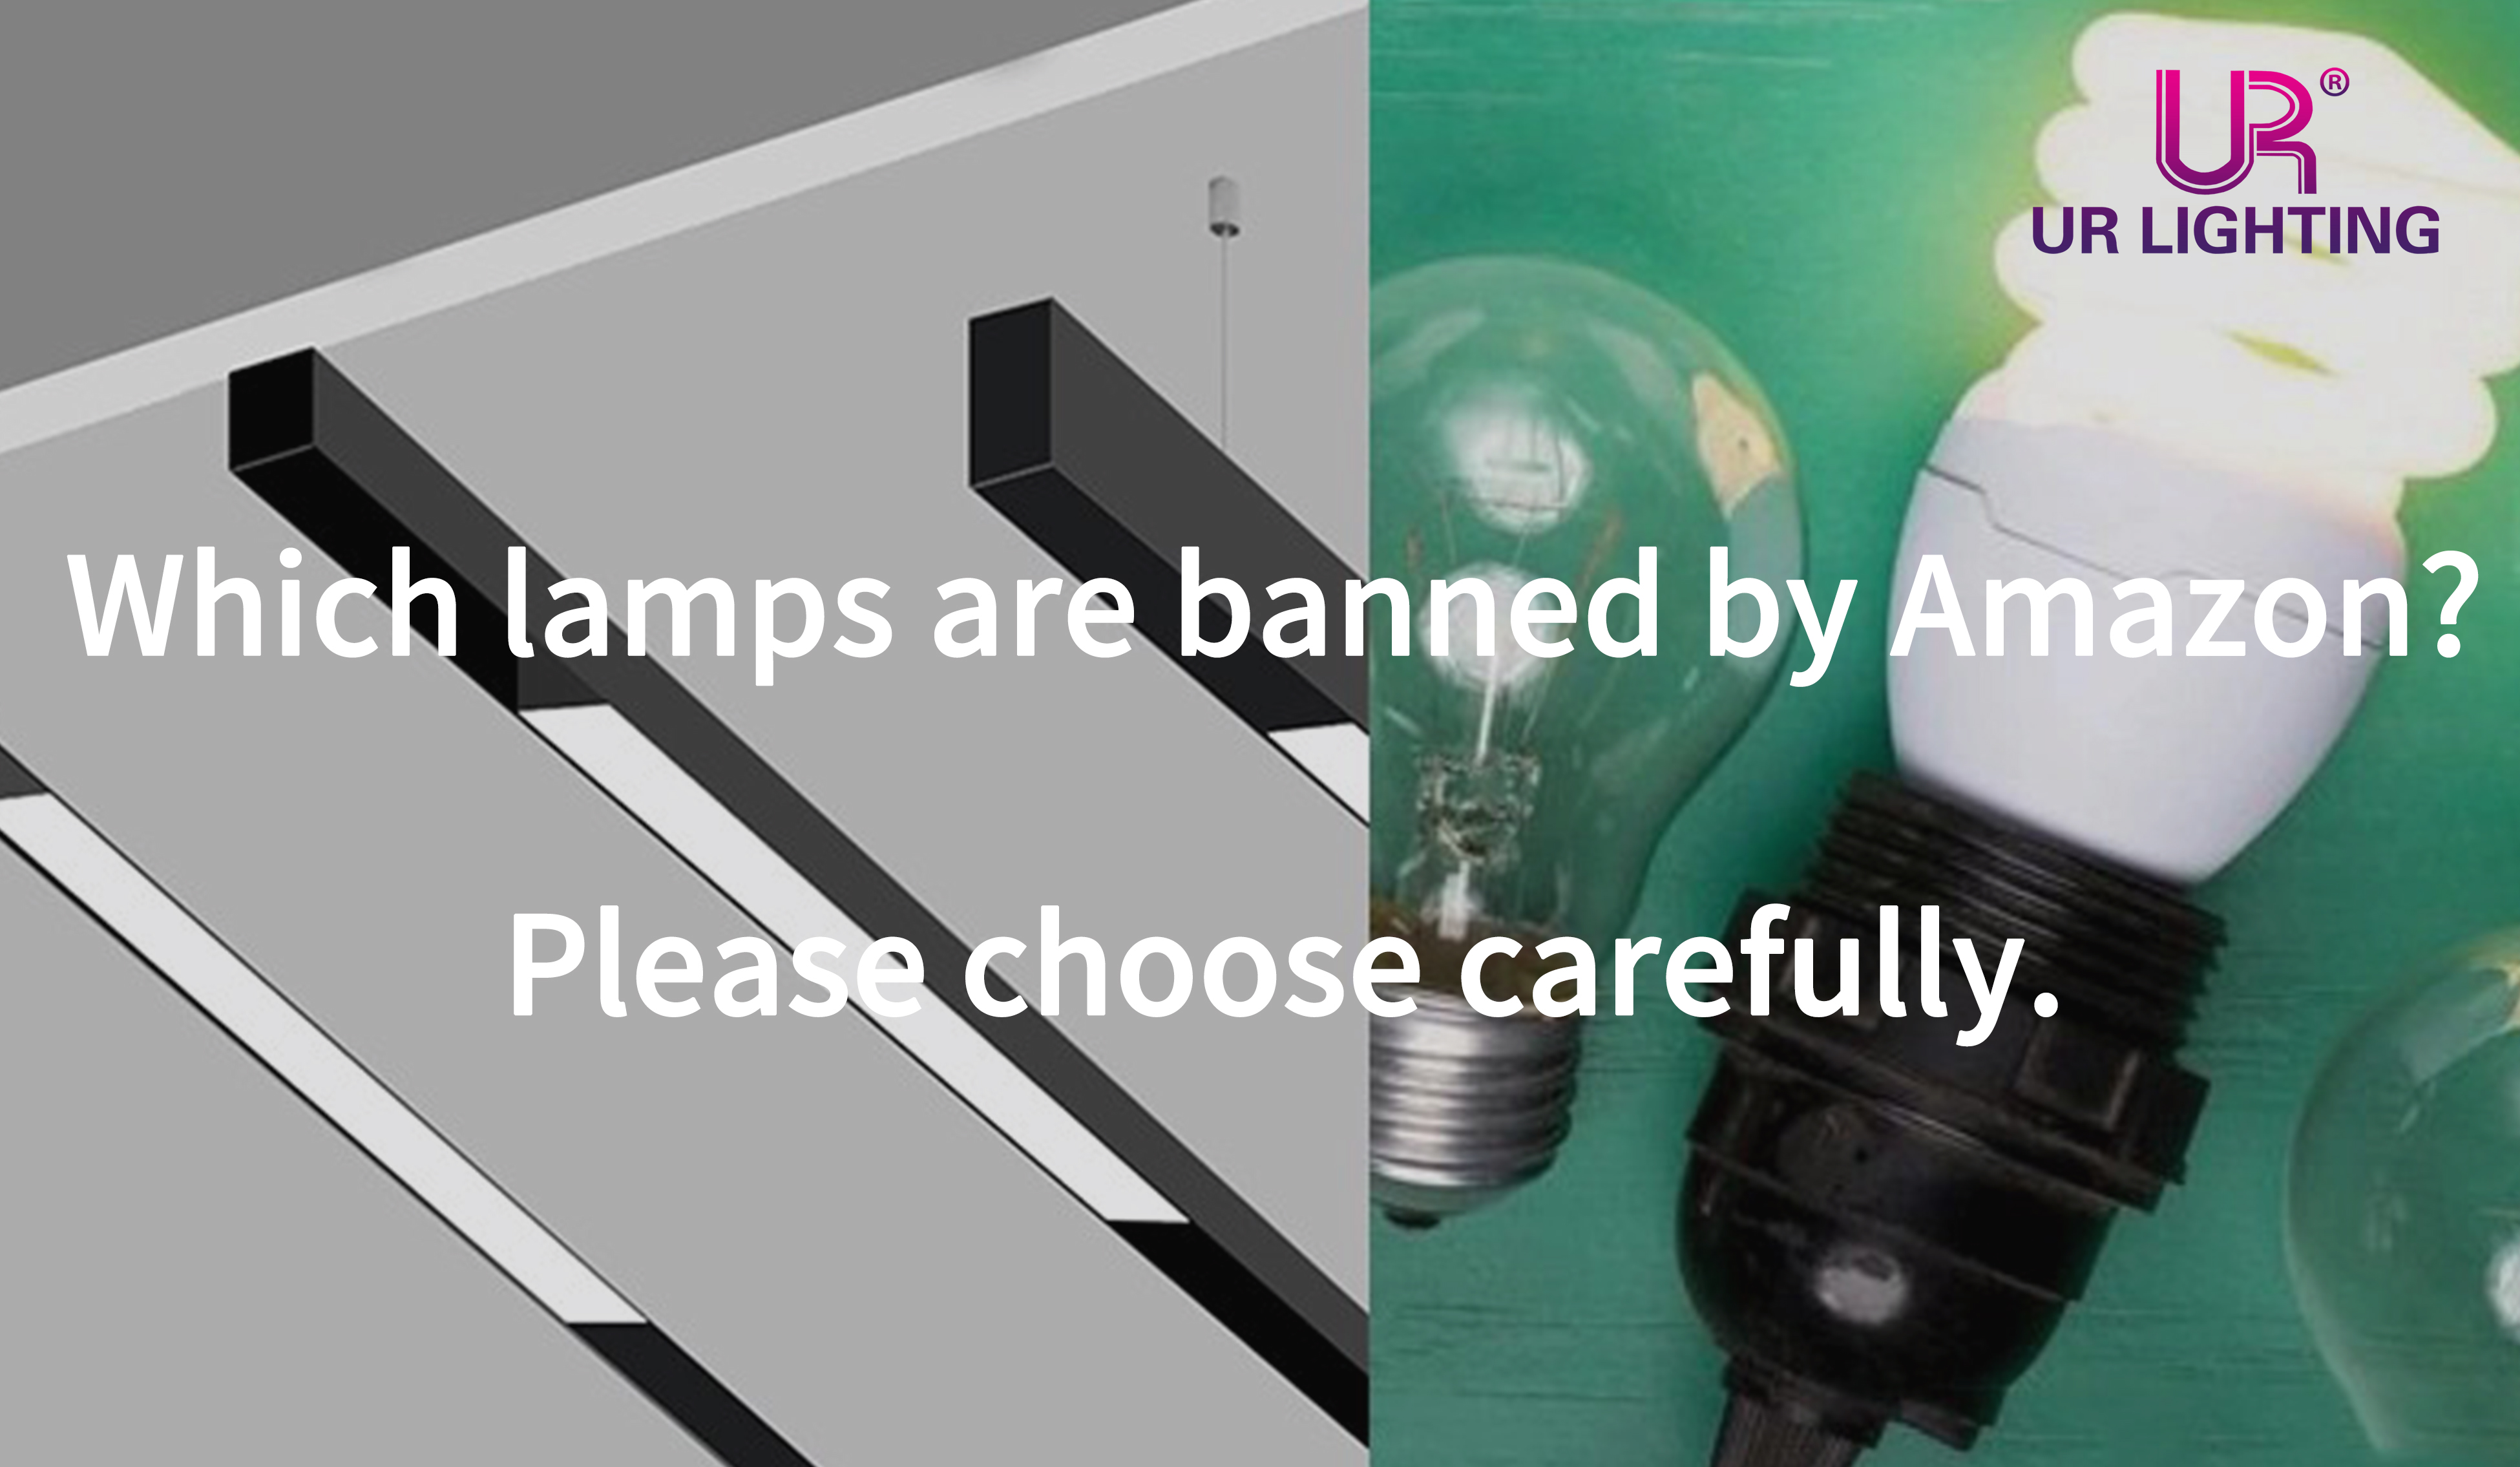 Welche Lampen sind von Amazon verboten? Bitte wählen Sie sorgfältig aus.